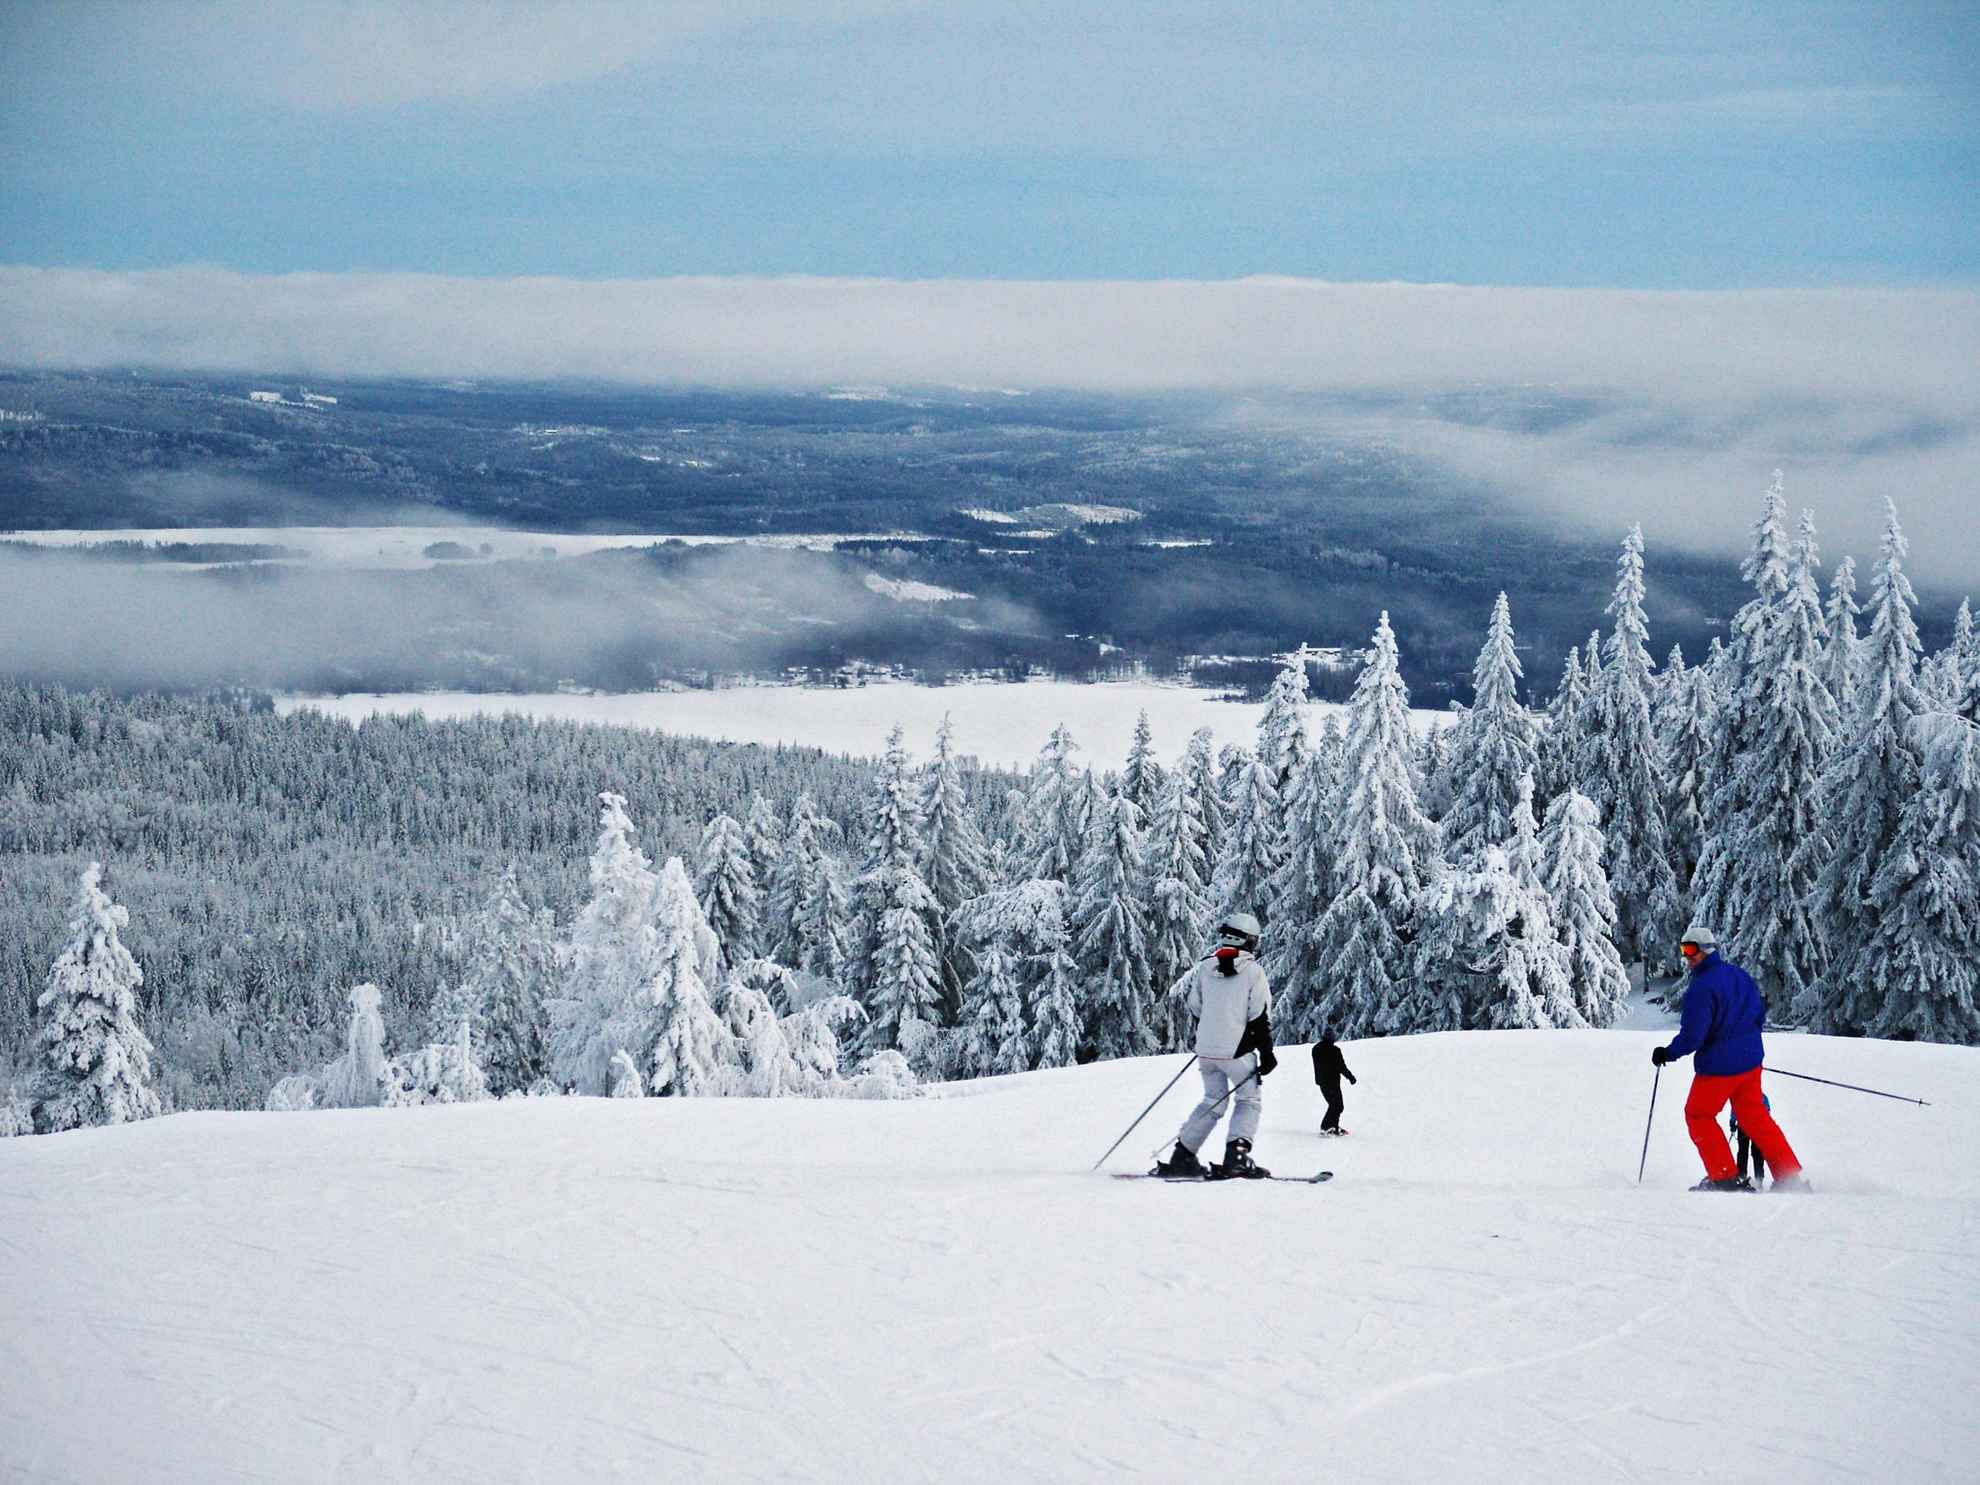 Een uitzicht vanaf een besneeuwde berg. Mensen skiën de skipiste af.